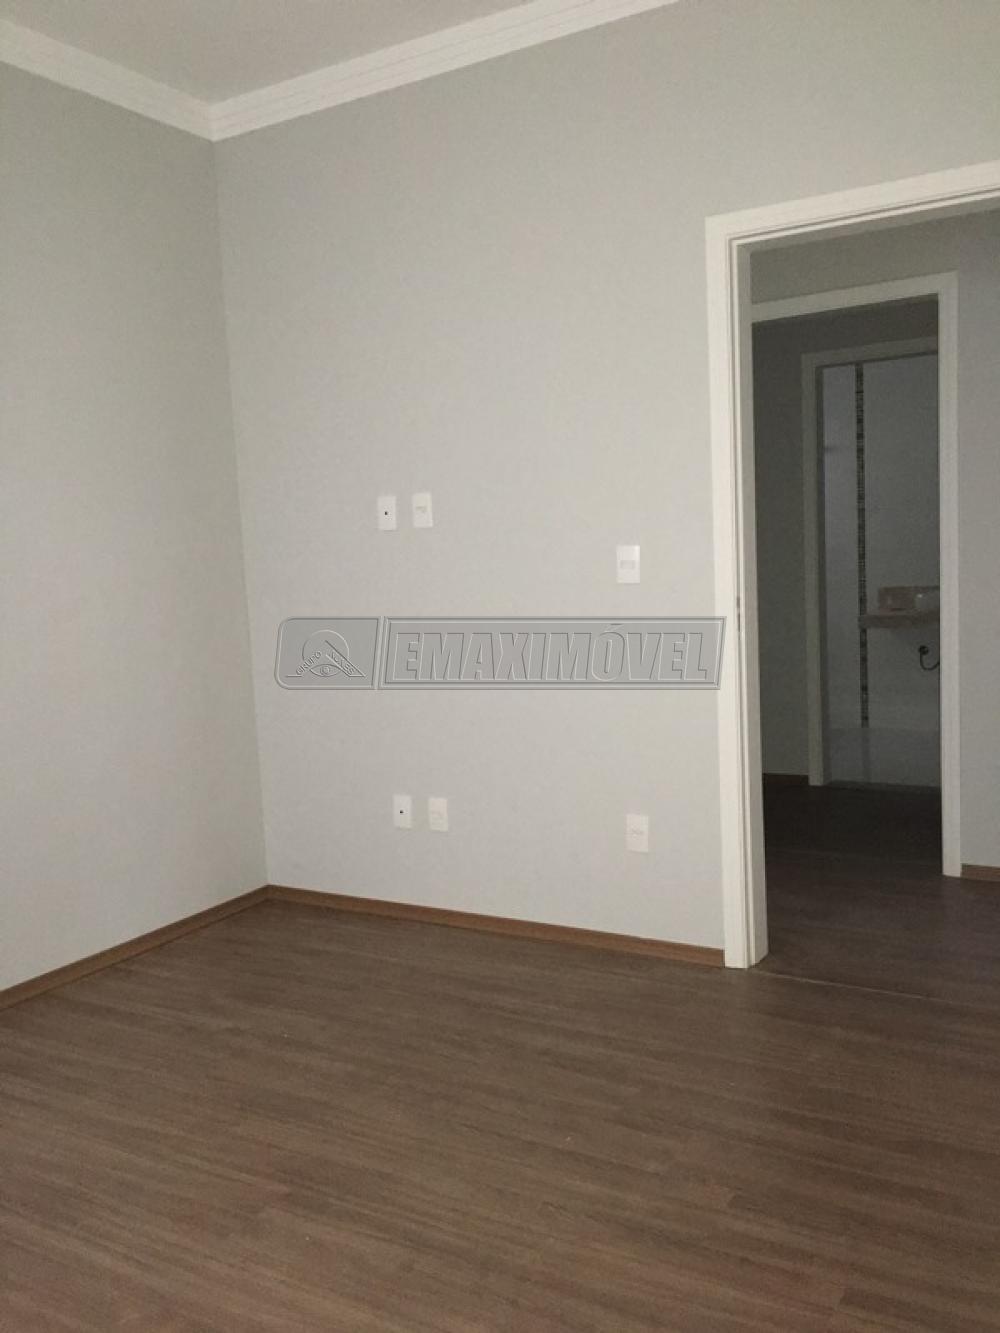 Comprar Casa / em Condomínios em Sorocaba R$ 790.000,00 - Foto 18